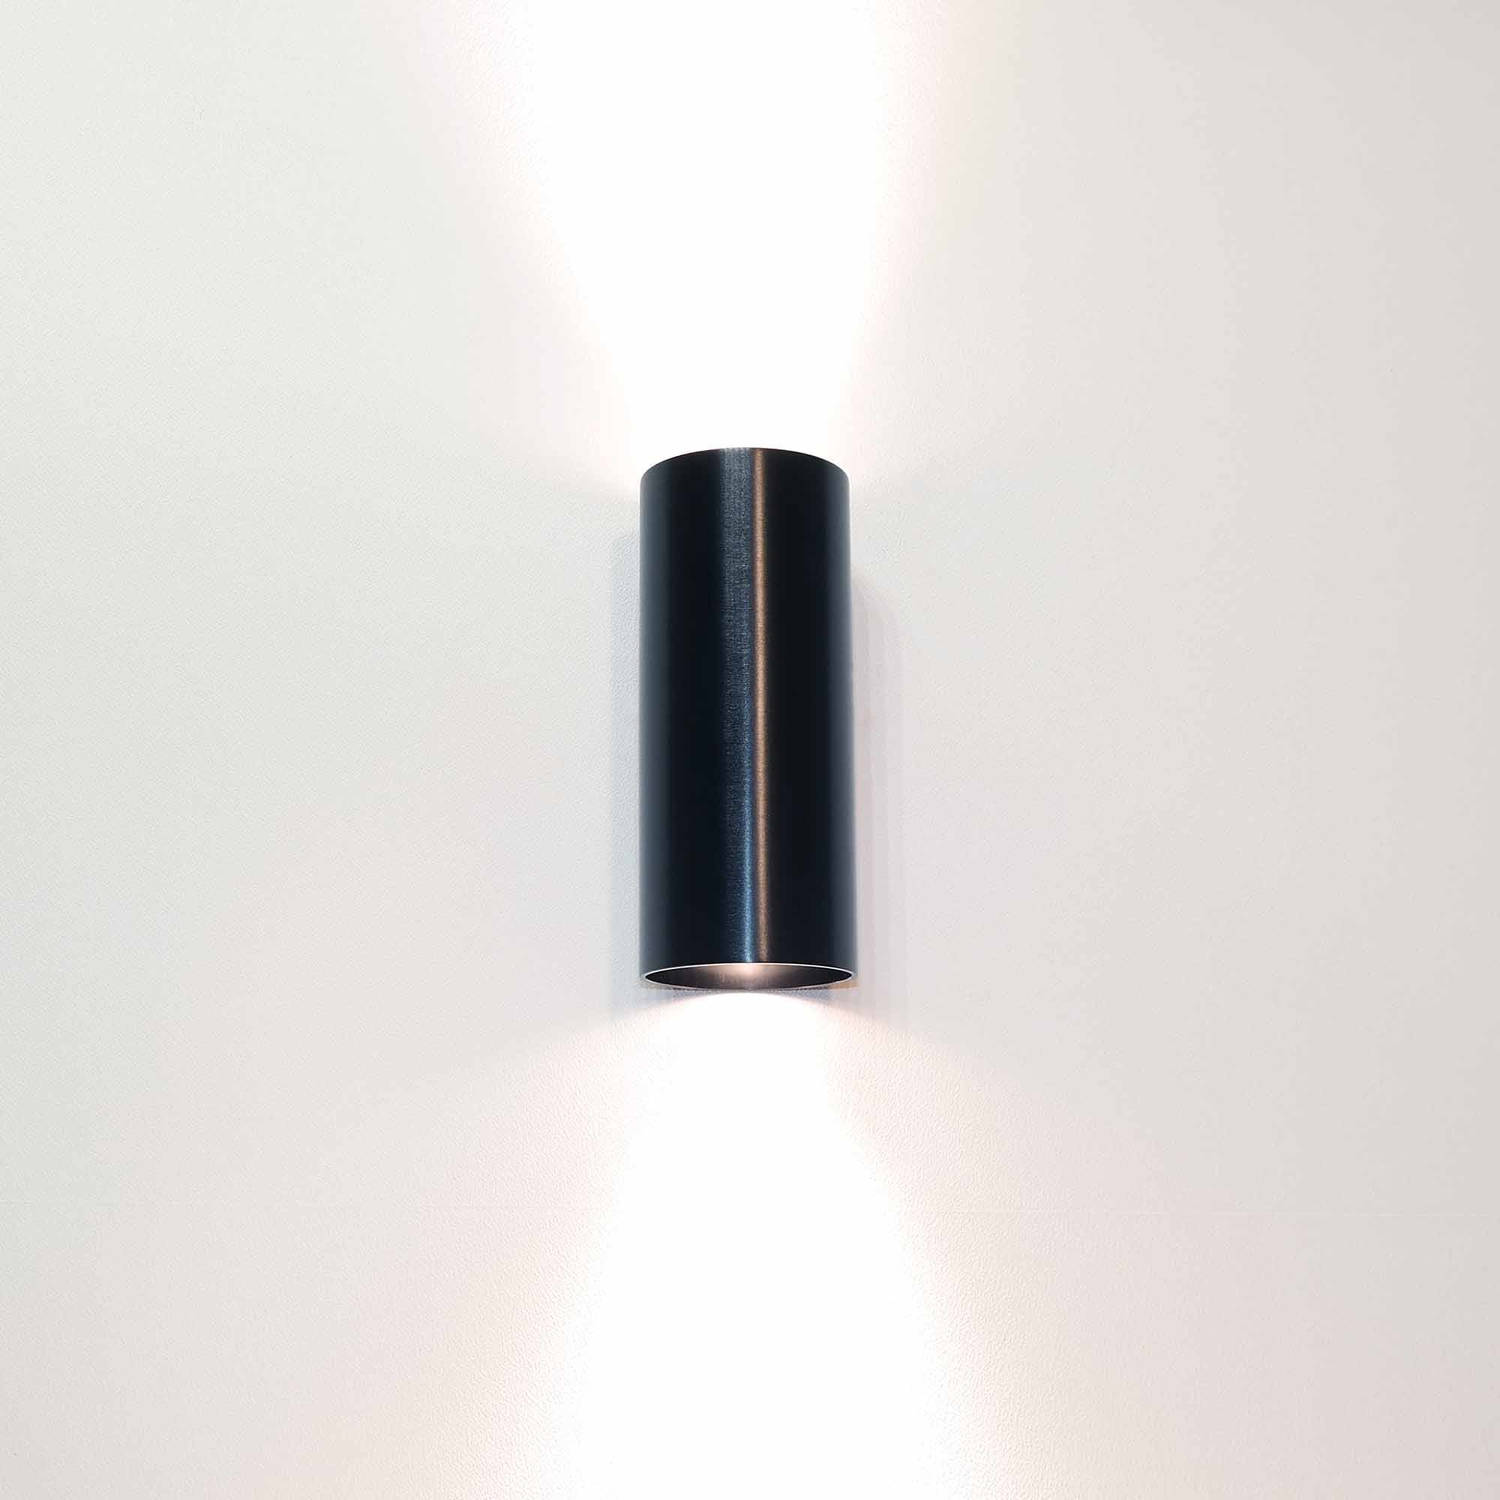 Artdelight Wandlamp Roulo 2 lichts H 15,4 Ø 6,5 cm zwart